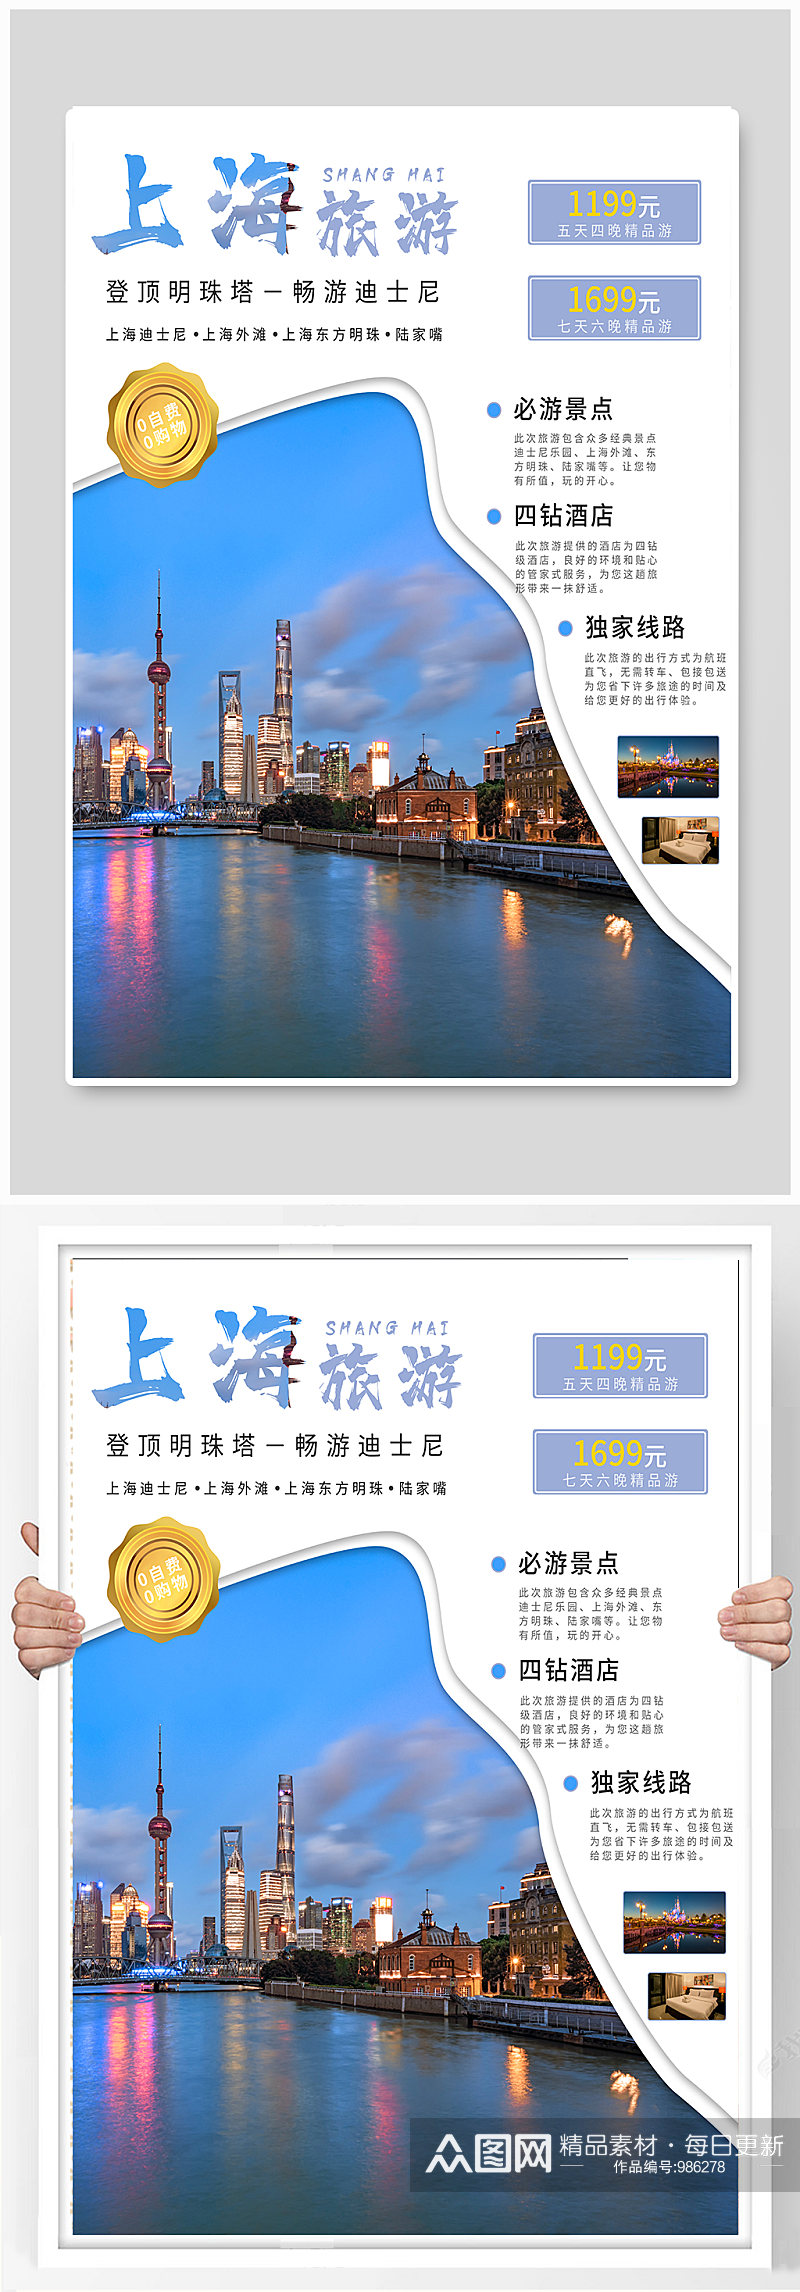 上海旅游主题海报素材